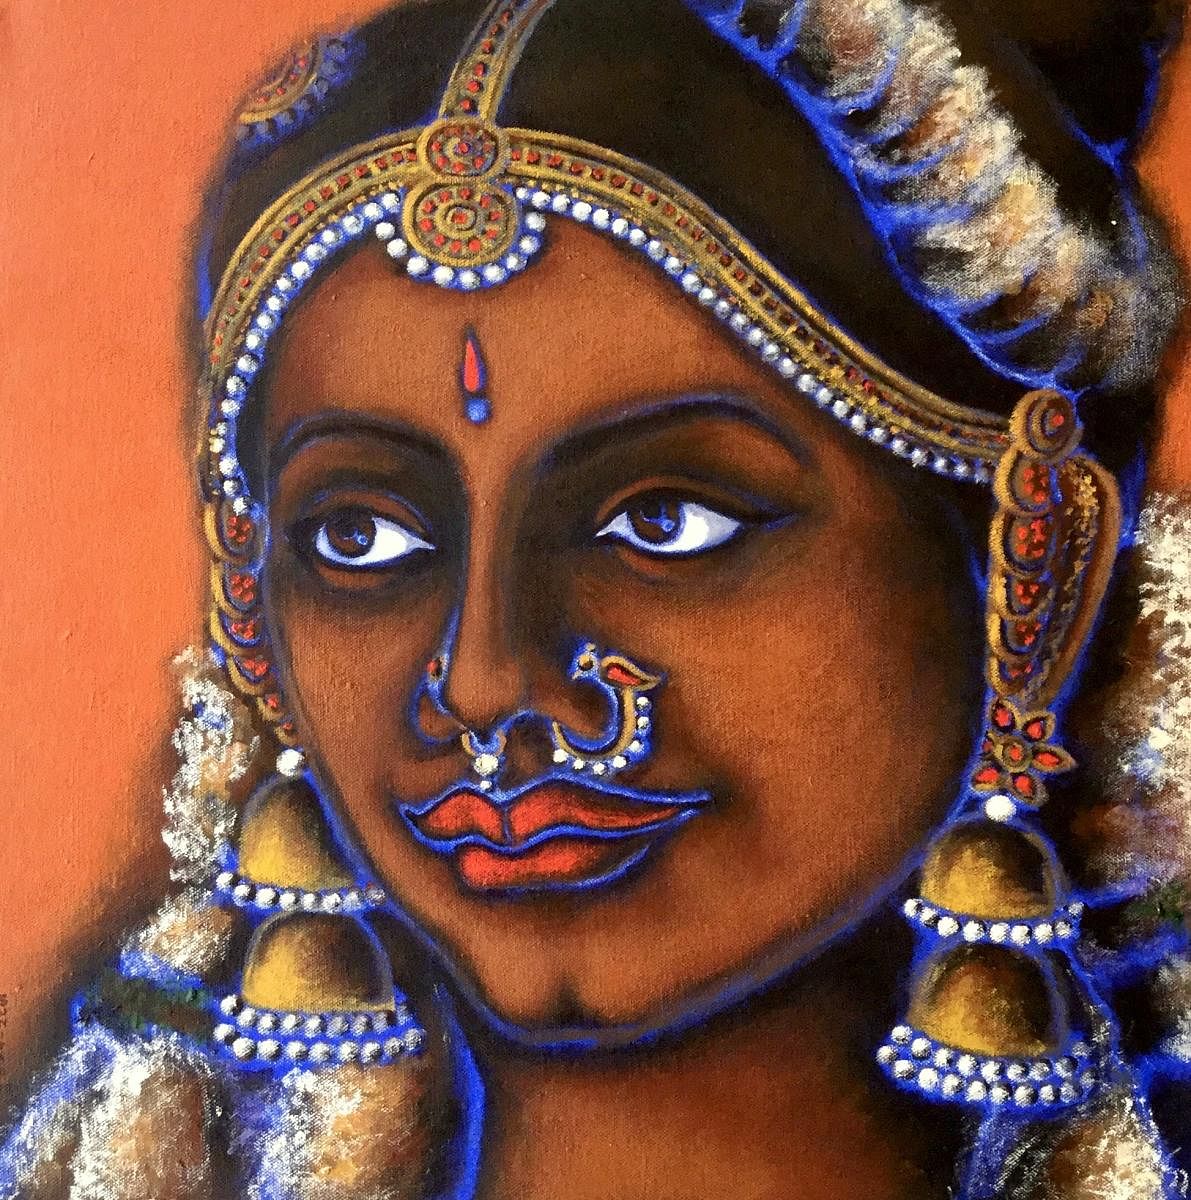 ಹುಬ್ಬಳ್ಳಿಯ ಯುವ ಕಲಾವಿದೆ ಡಾ. ಸುನಿತಾ ಪಾಟೀಲ ಅವರ ಕಲಾಕೃತಿ